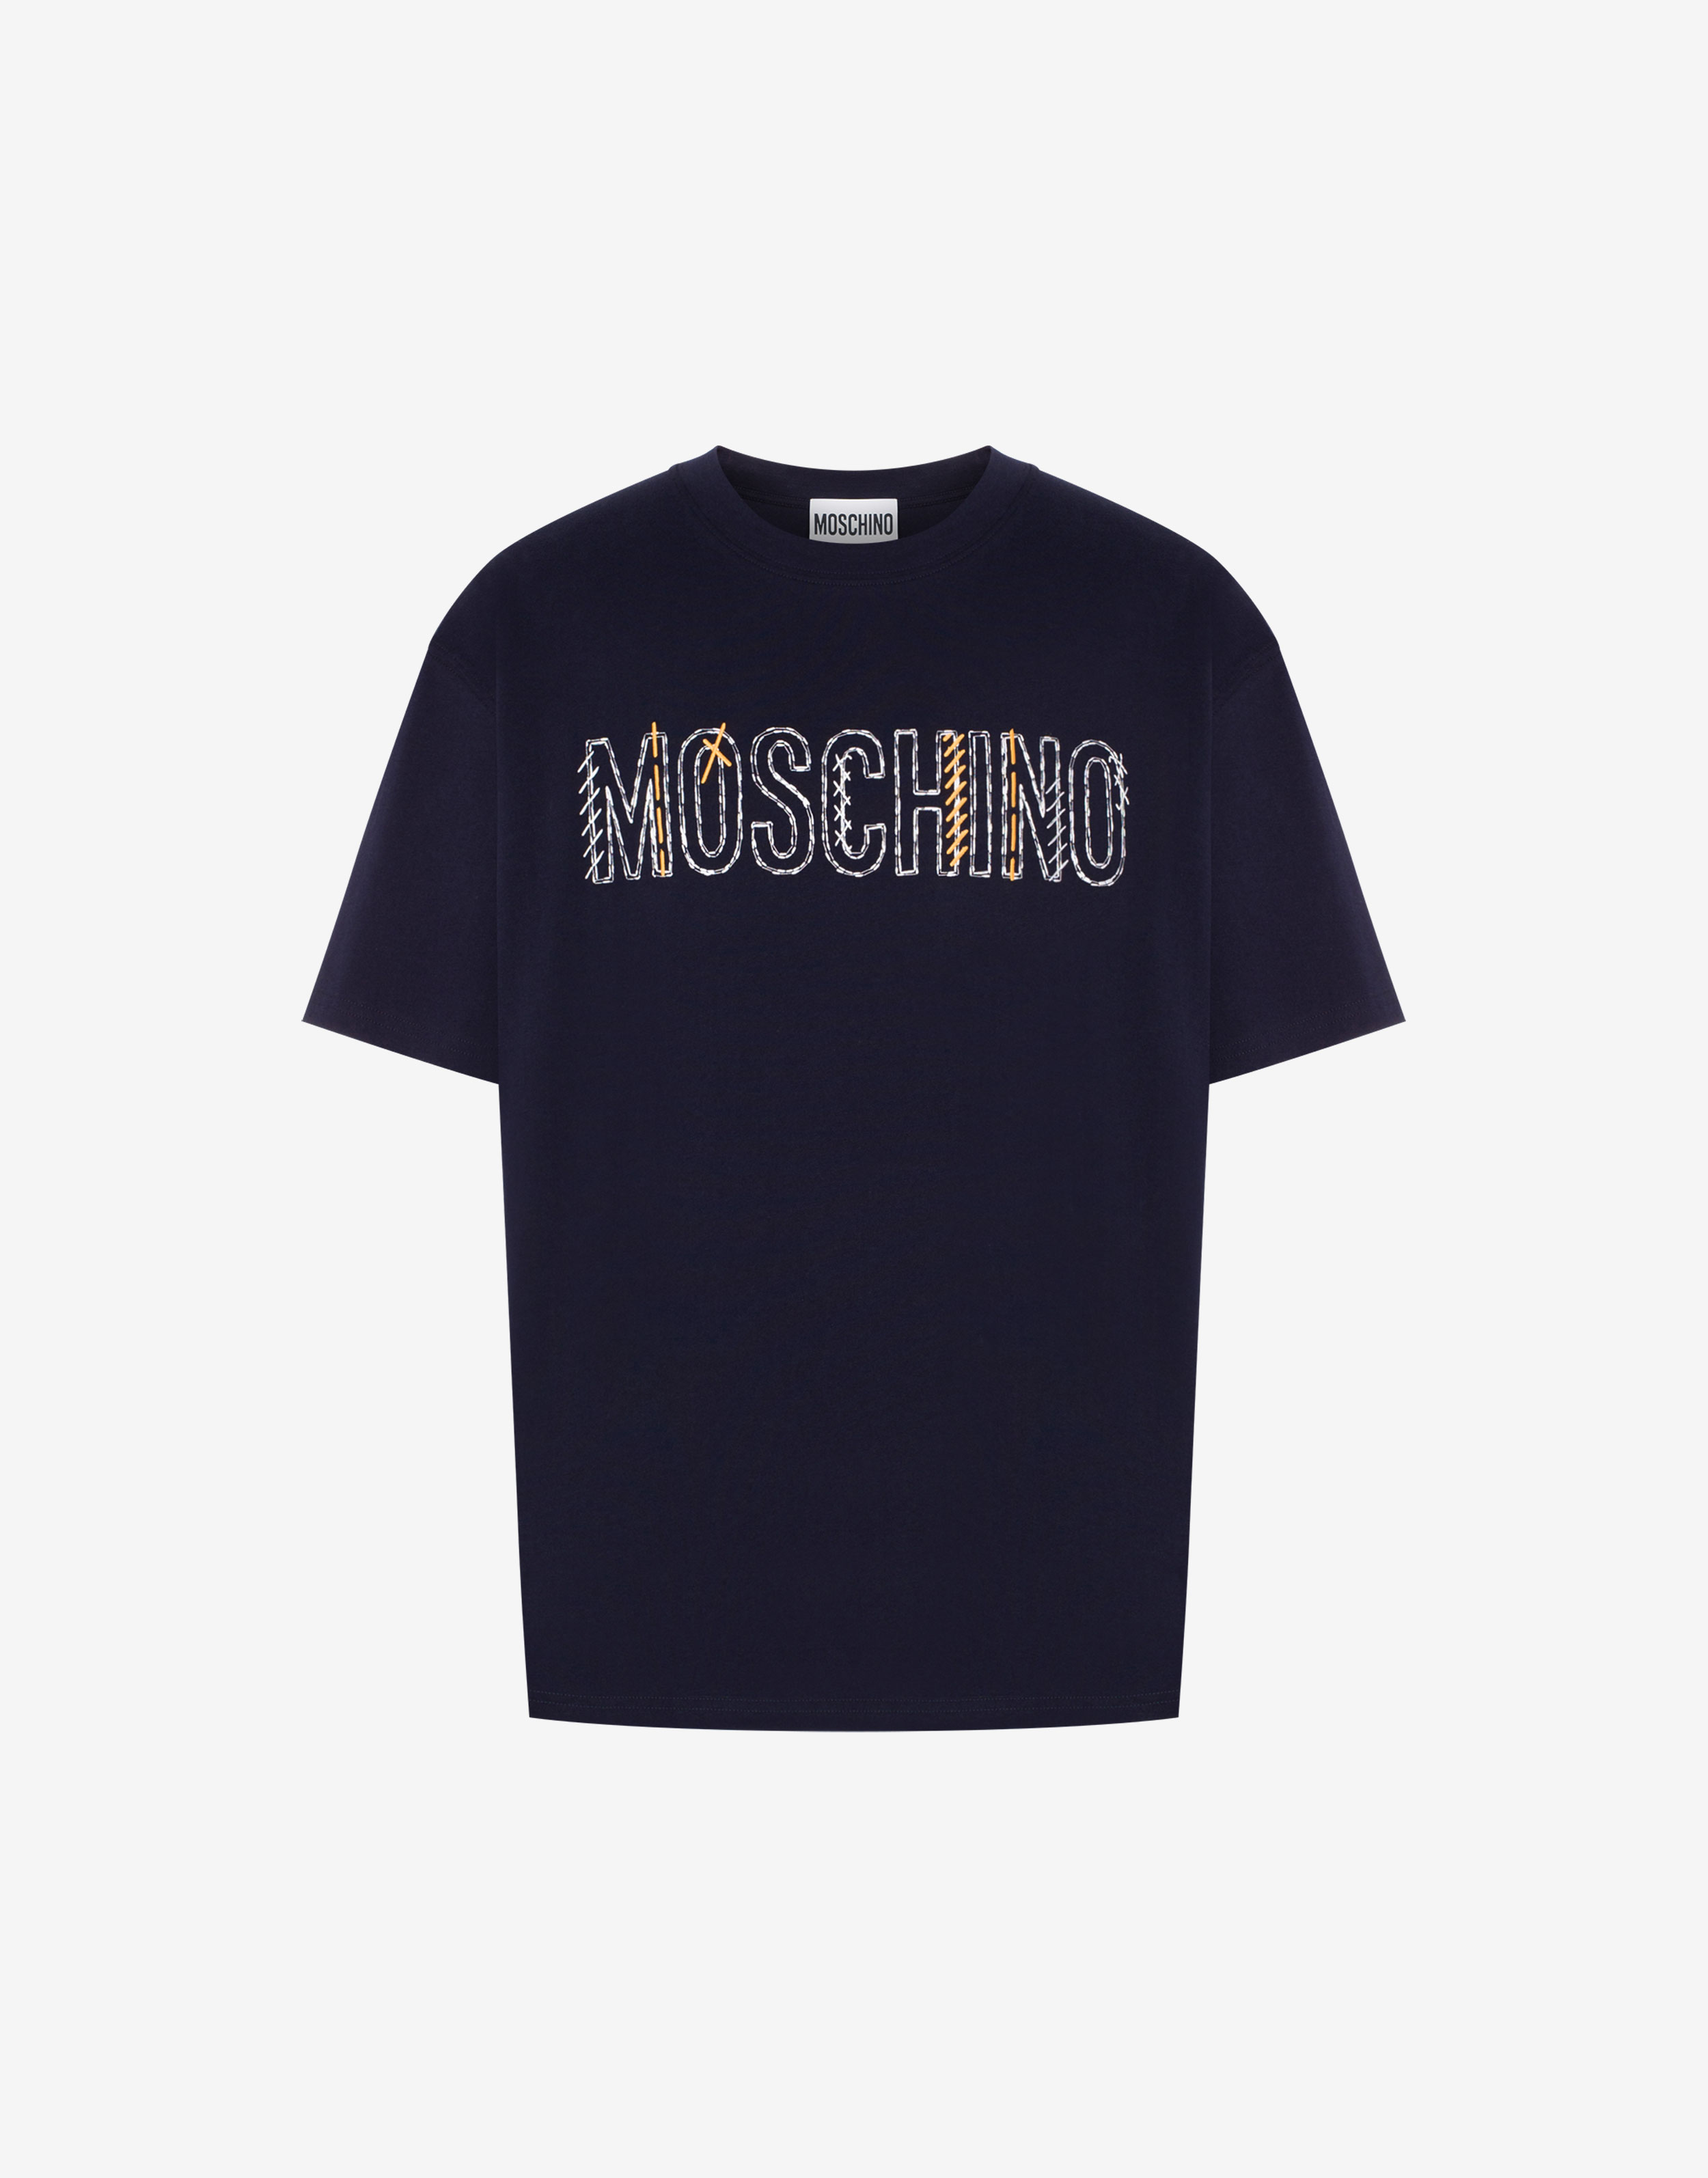 Camisetas y tops - Moschino - hombre